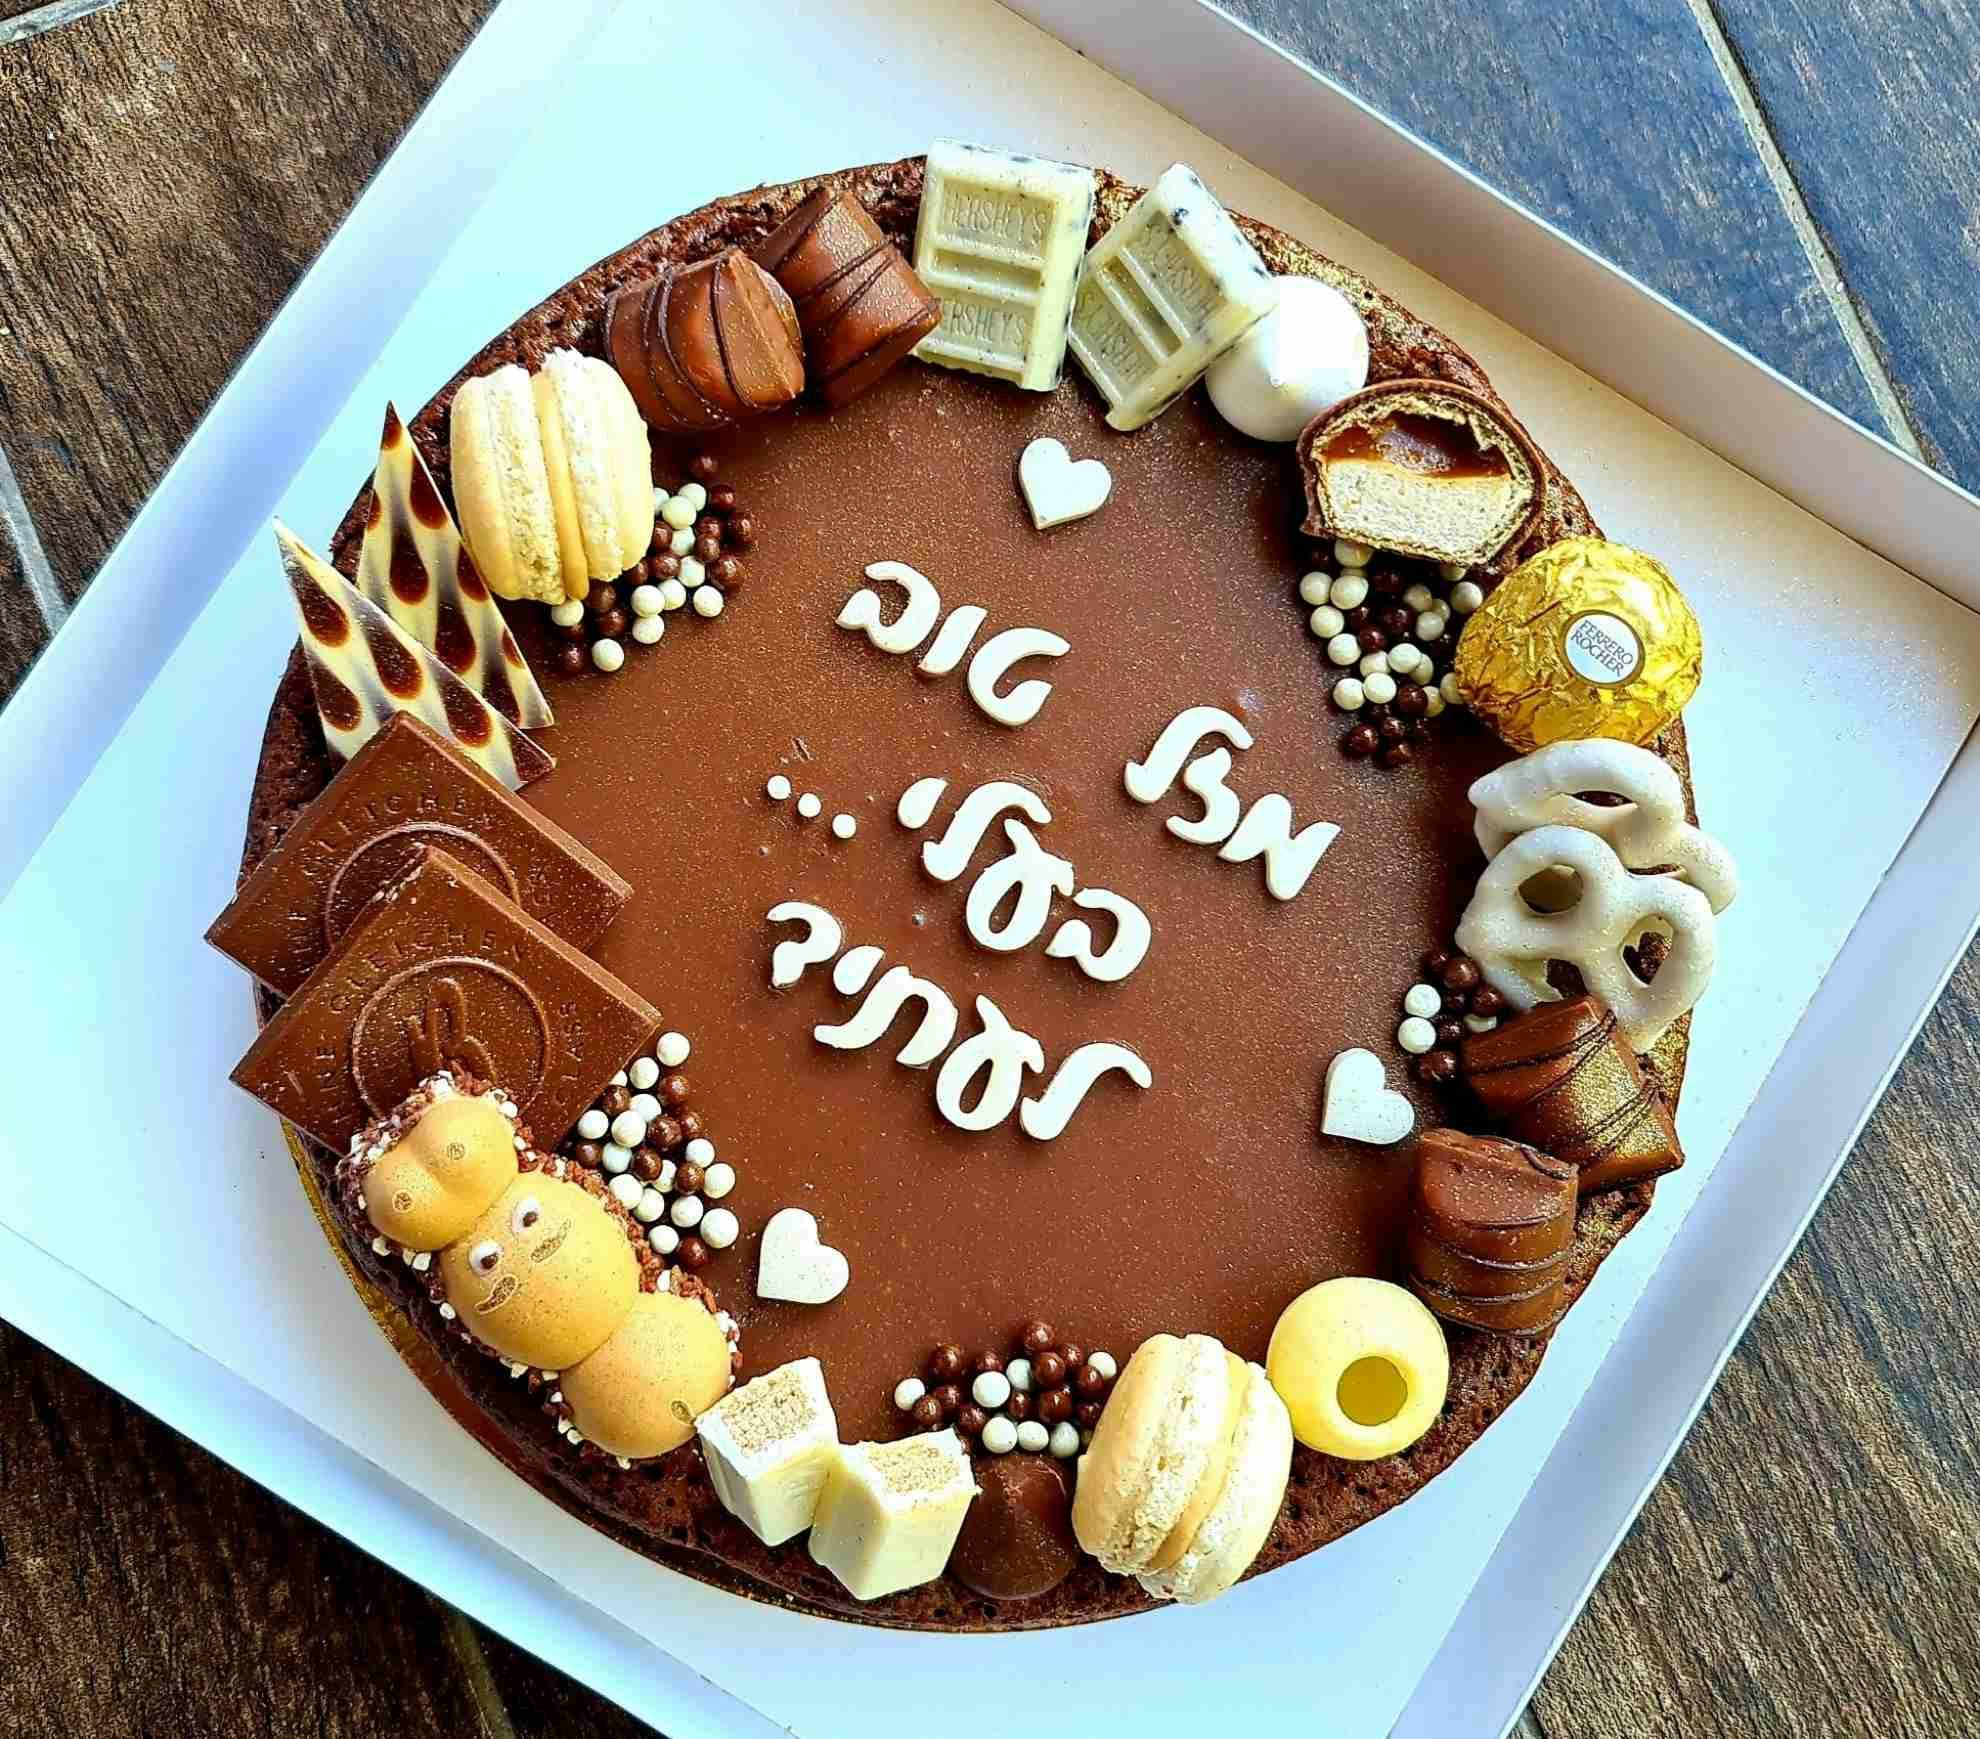 עוגת פאדג׳ שוקולד למסיבת אירוסין - עם גנאש שוקולד בלגי ופינוקים
ללא קמח ** העוגה מכילה שקדים